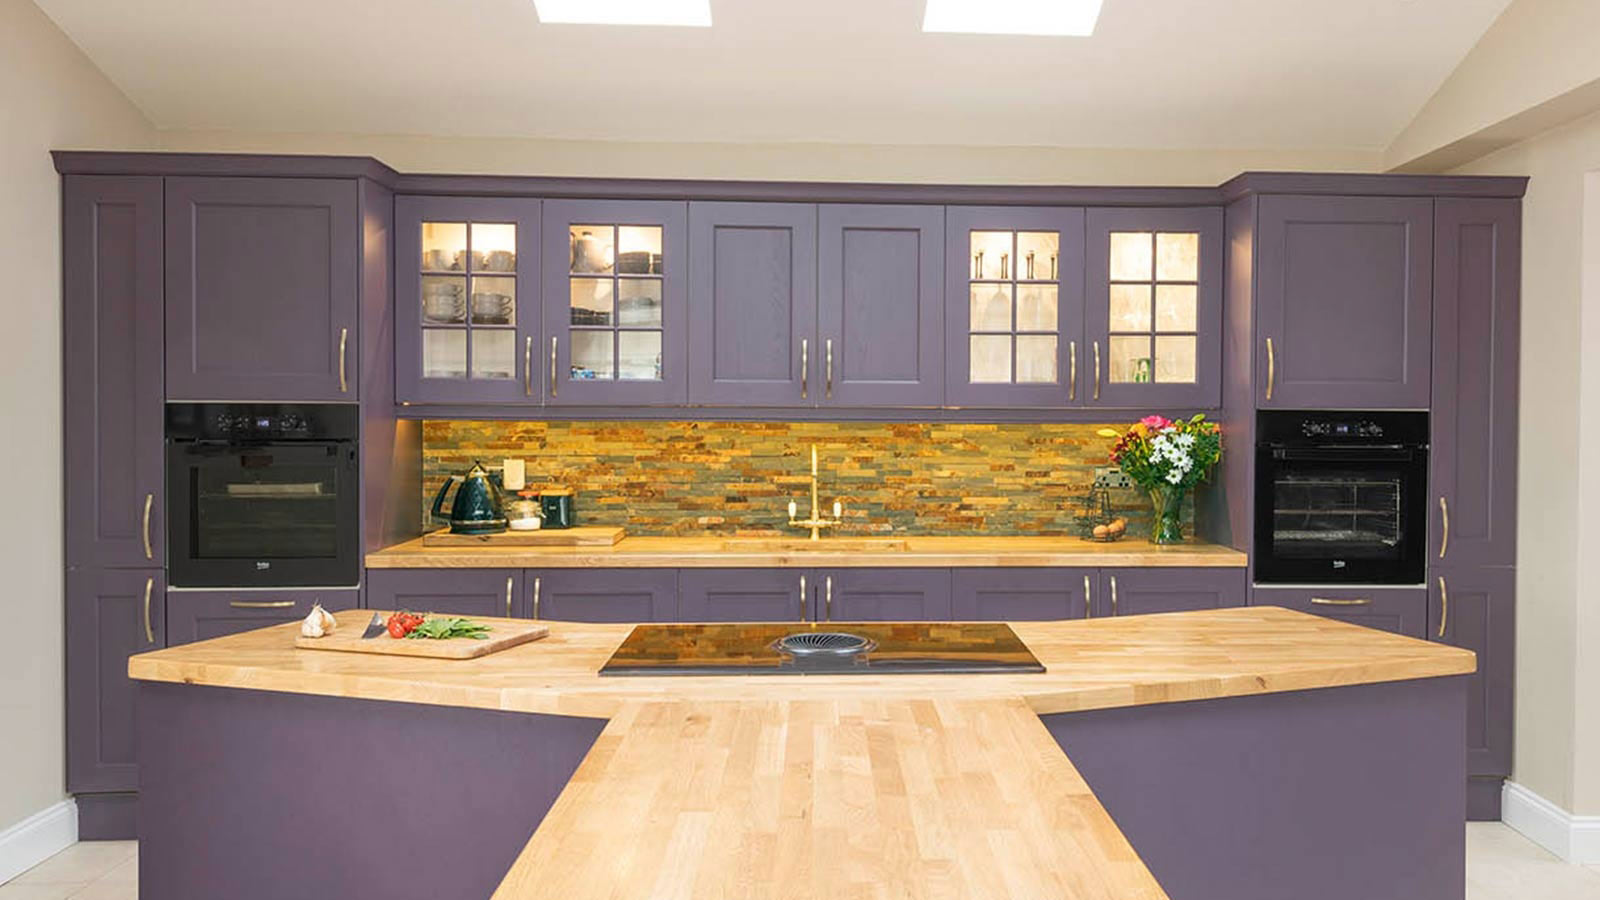 A purple kitchen with vibrant kitchen paint colours